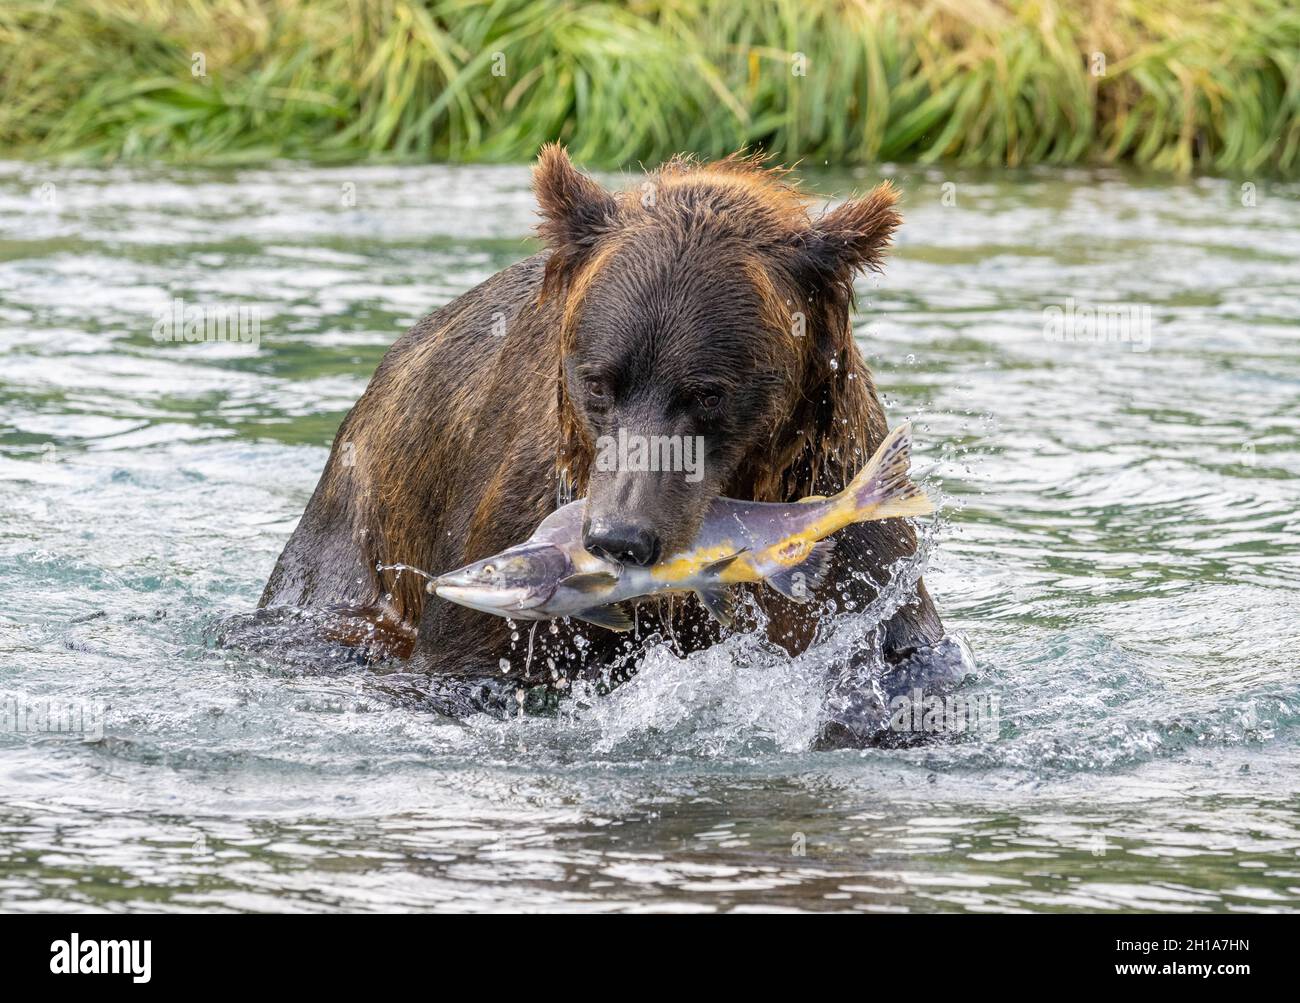 A Brown or Grizzly Bear, Katmai National Park, Alaska. Stock Photo